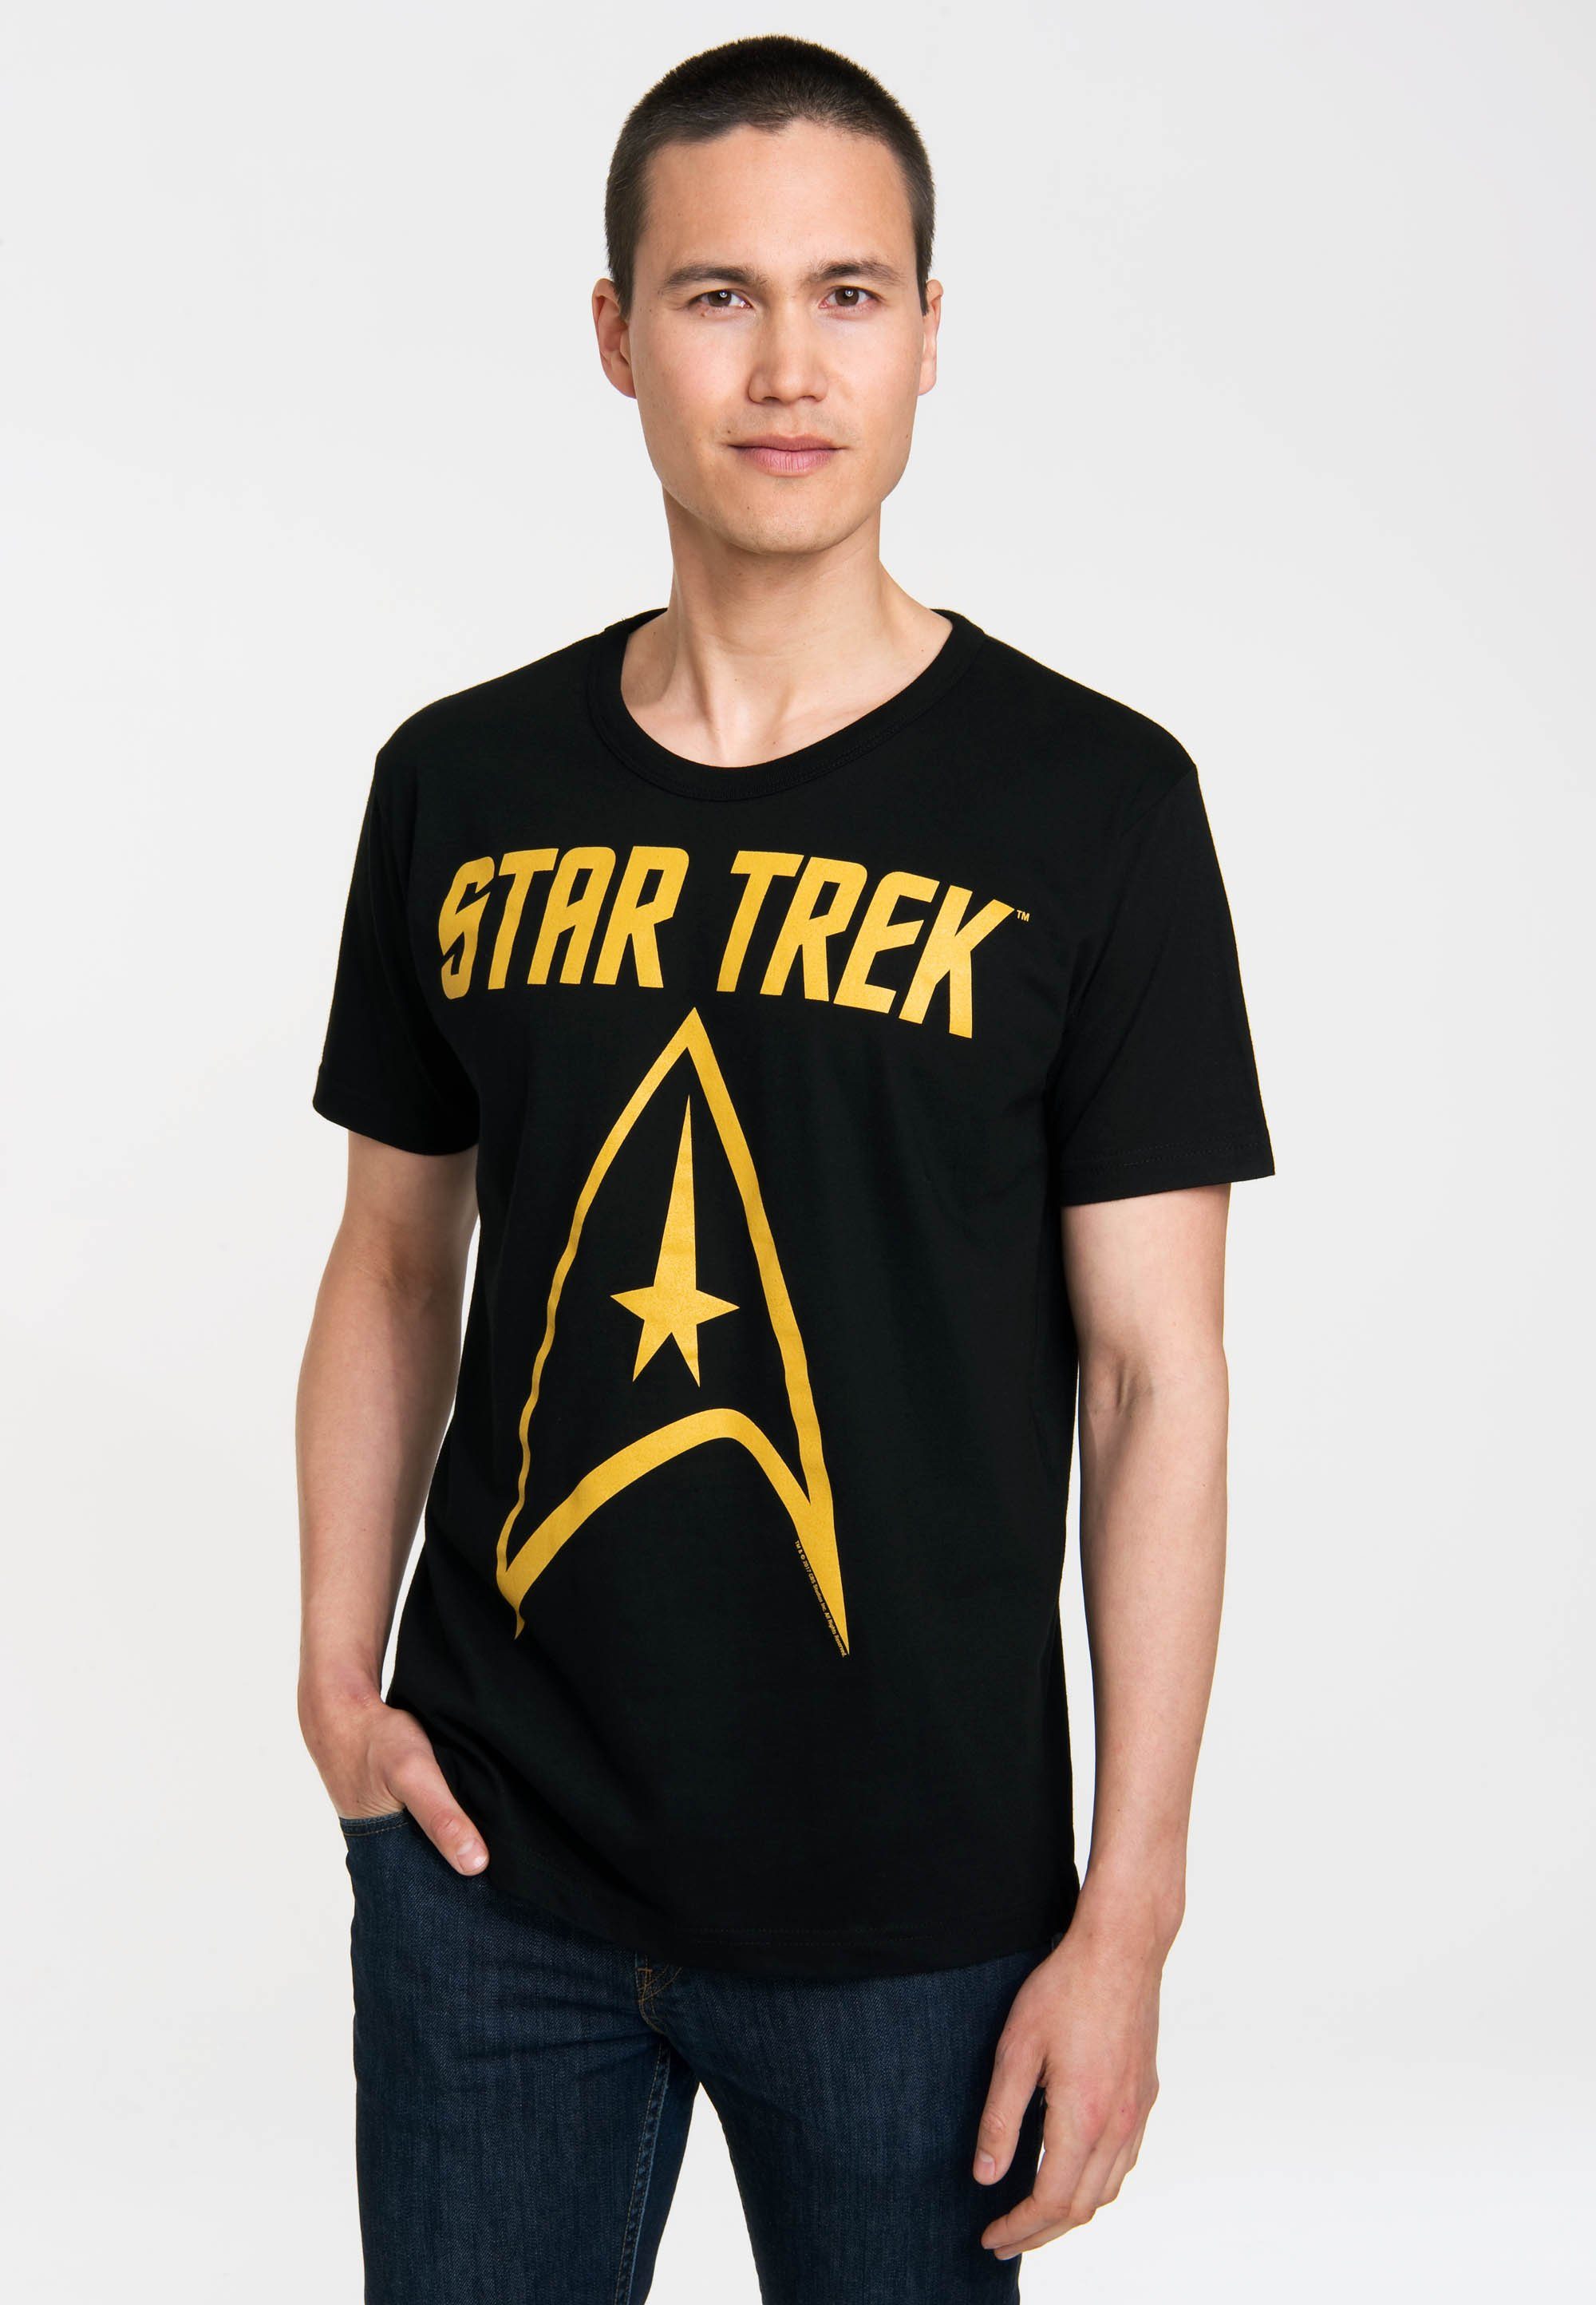 Star LOGOSHIRT Trek Star Trek-Logo T-Shirt mit Logo